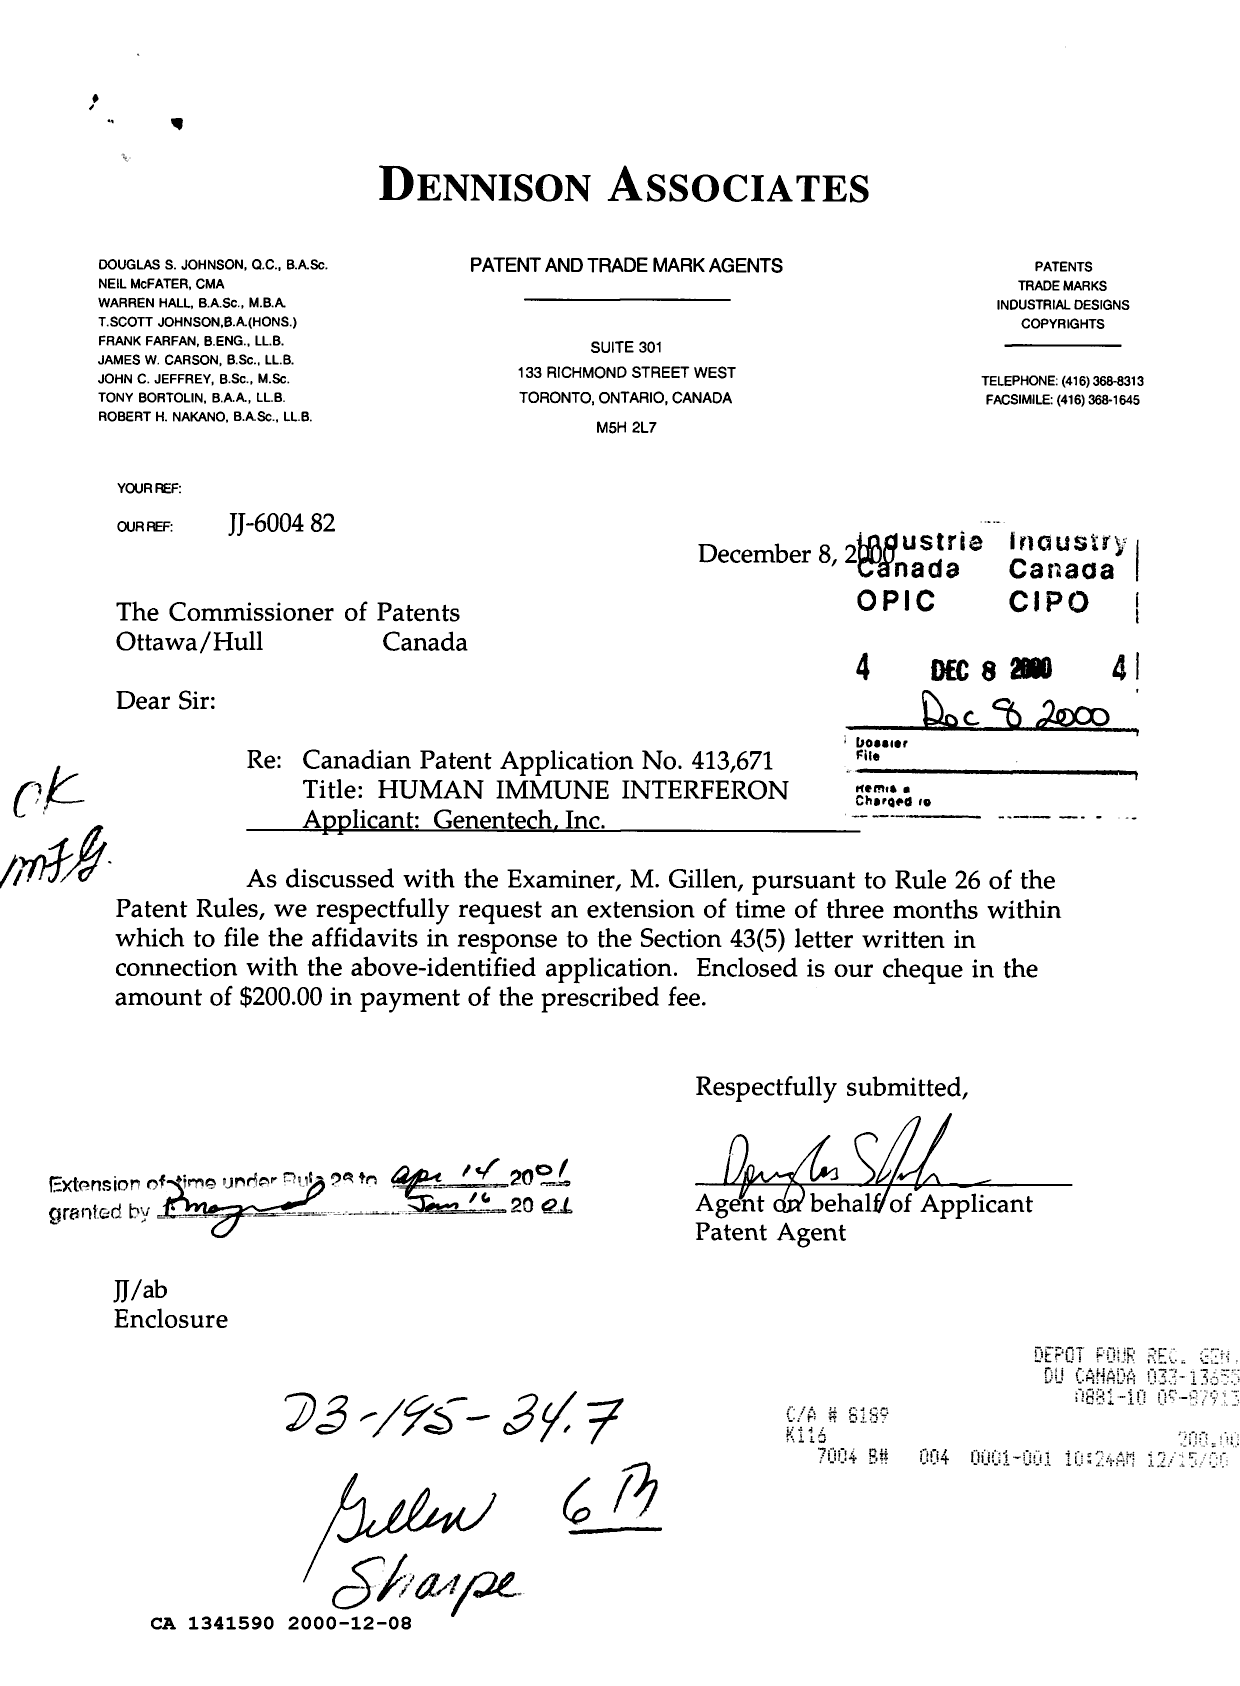 Document de brevet canadien 1341590. Correspondance reliée au PCT 20001208. Image 1 de 1